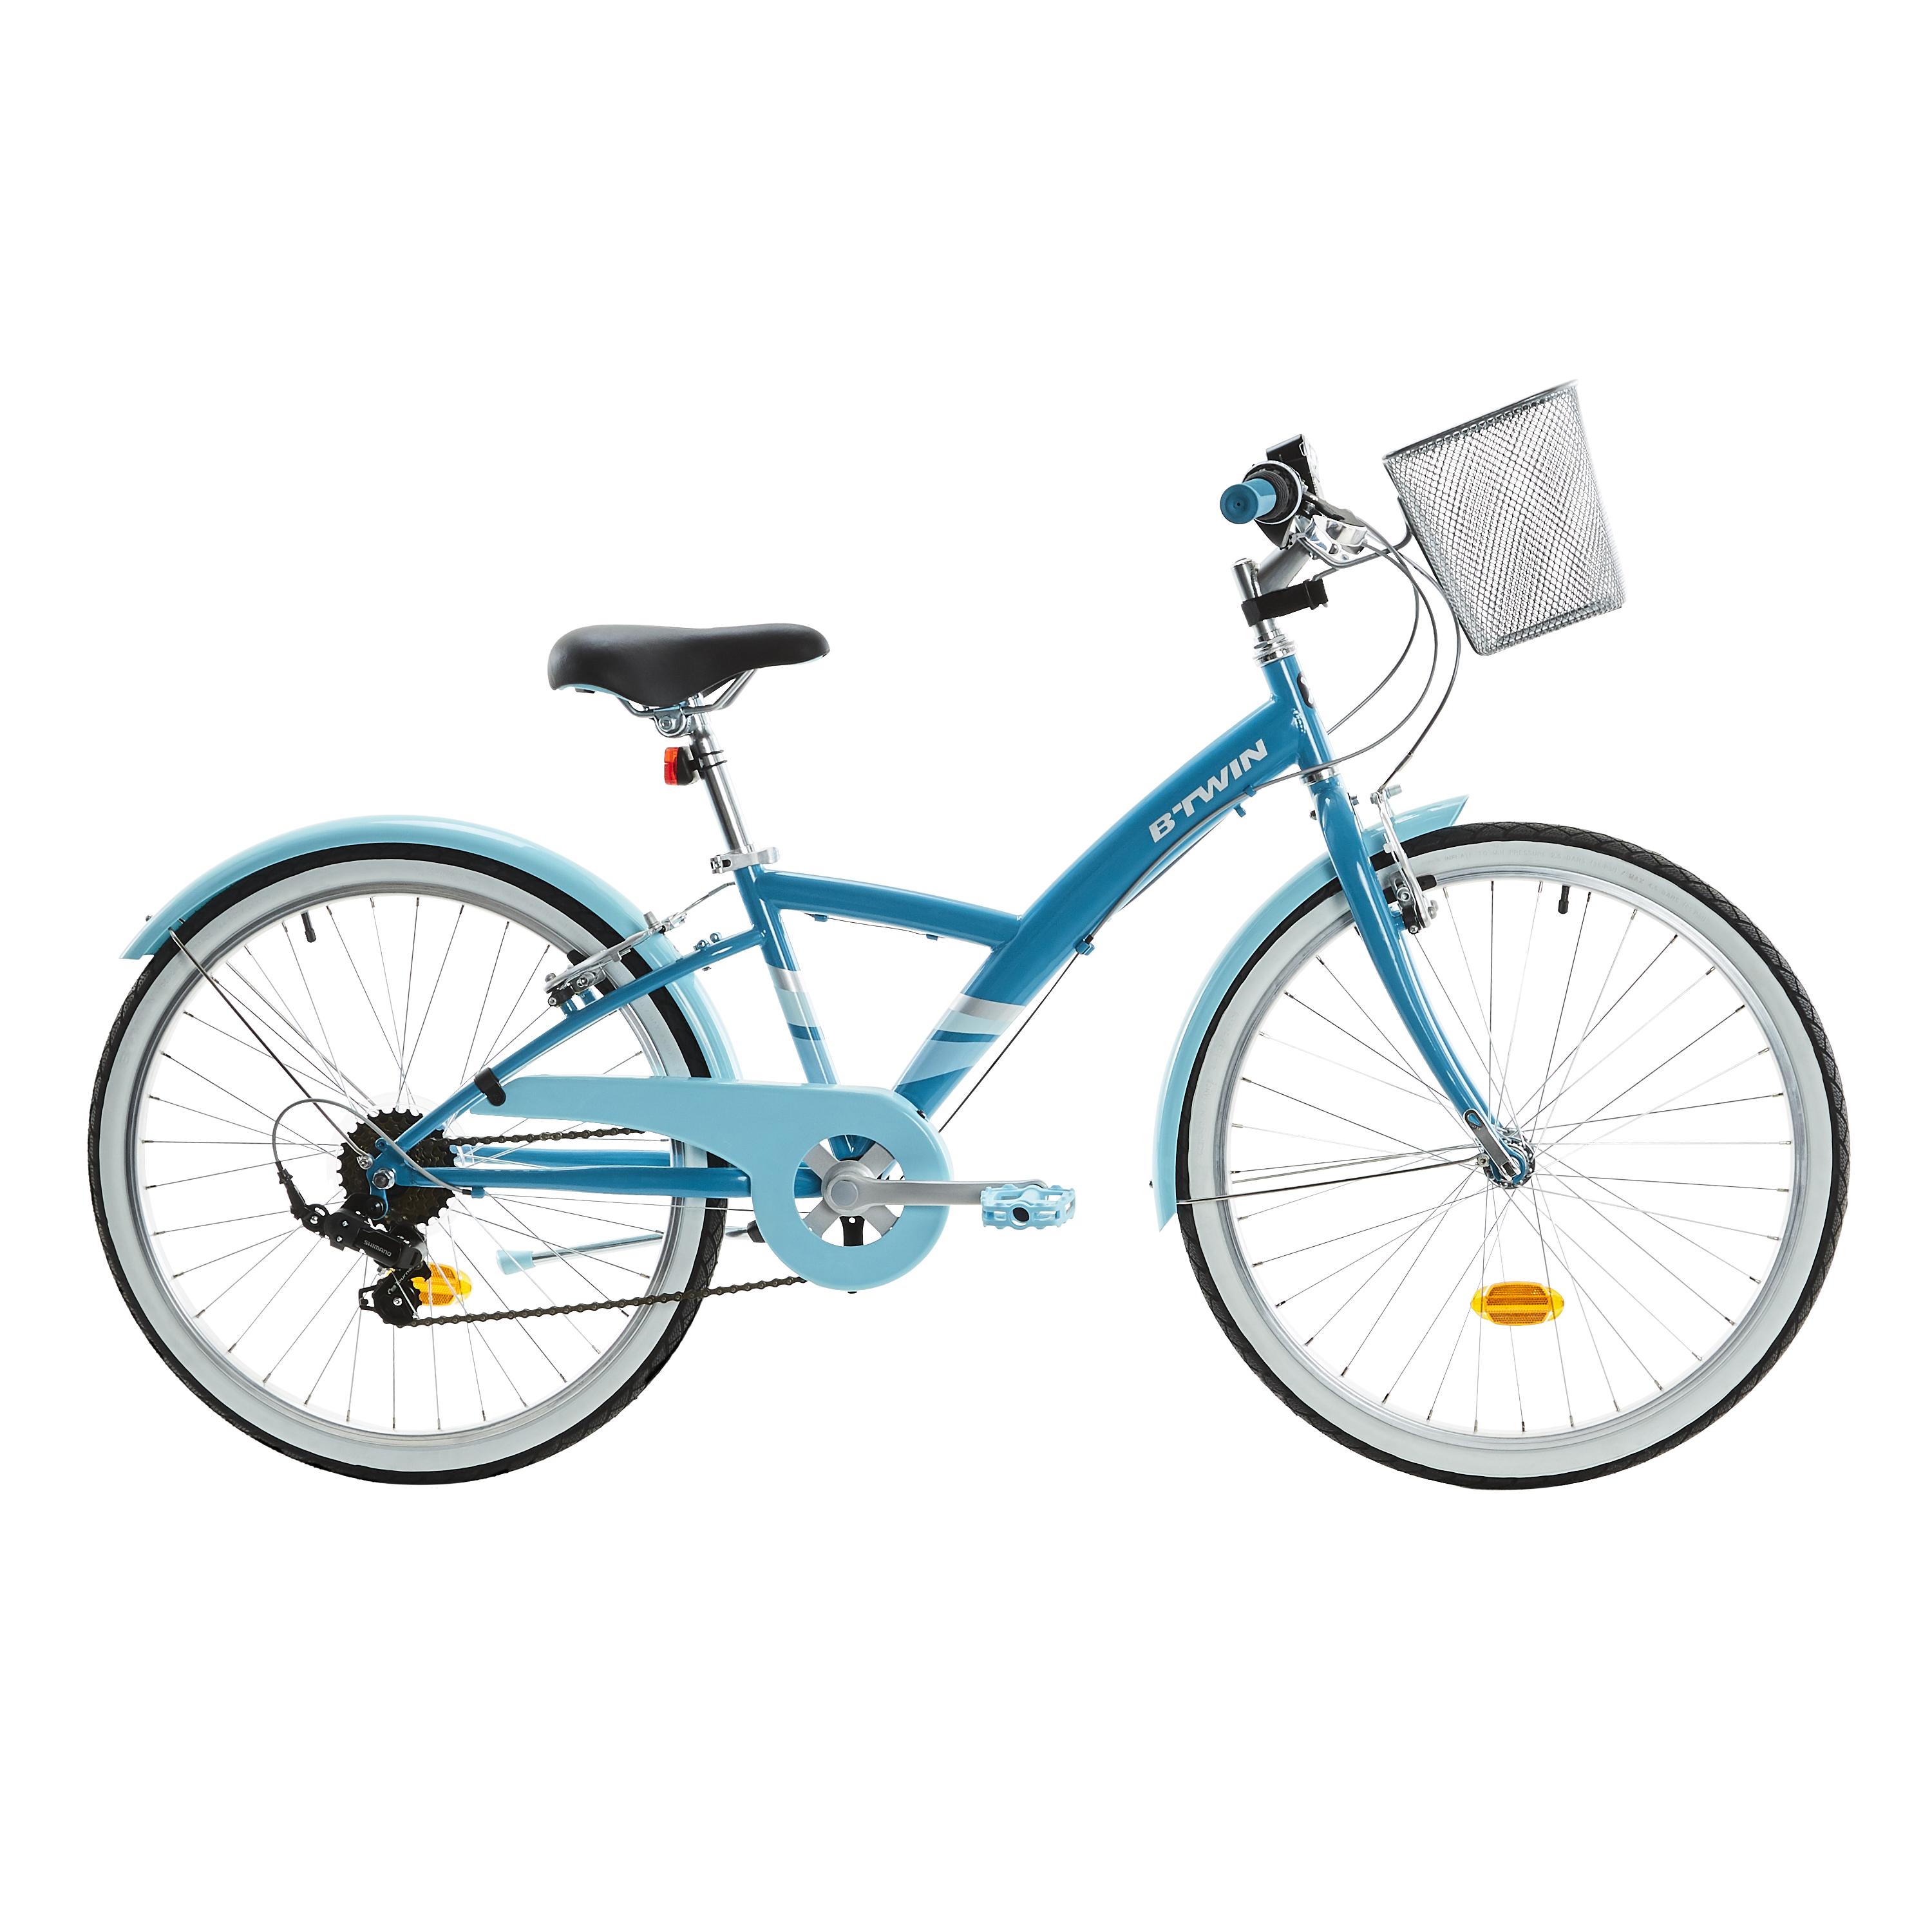 Bicicletă polivalentă Original 500 24”Albastru Copii 9-12 ani BTWIN imagine 2022